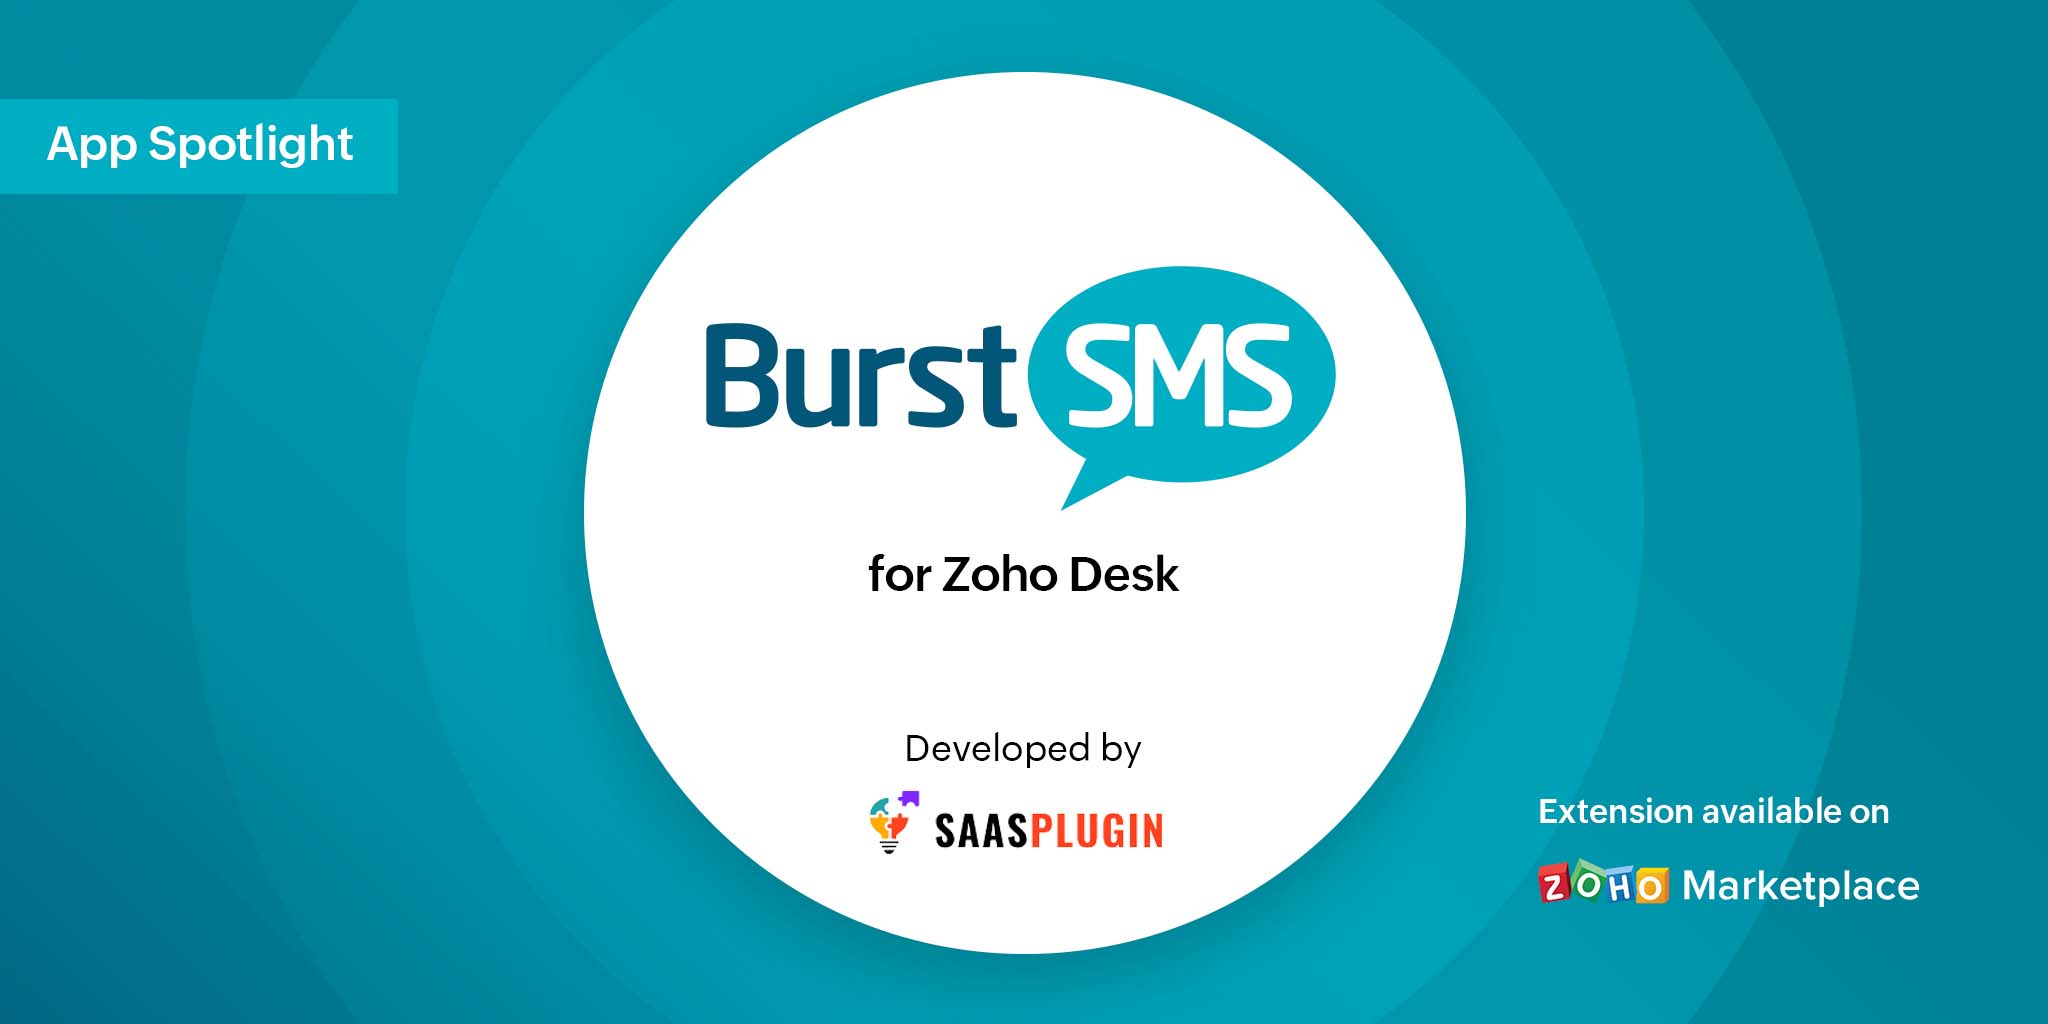 App Spotlight: Burst SMS for Zoho Desk